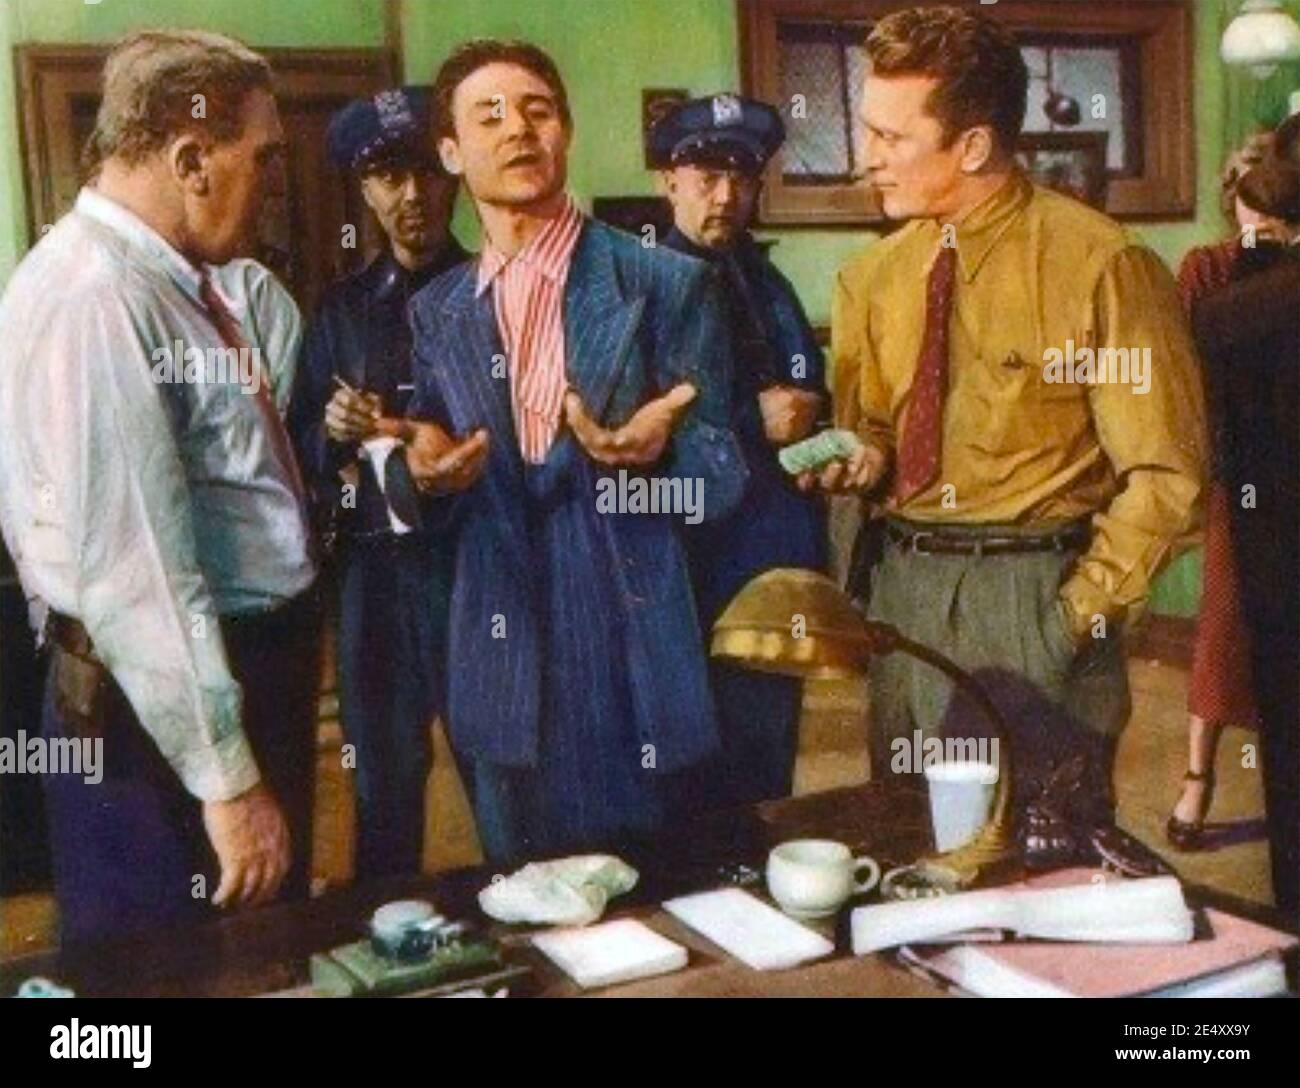 DETECTIVE STORY 1951 Paramount Pictures film avec Kirk Douglas at droite Banque D'Images